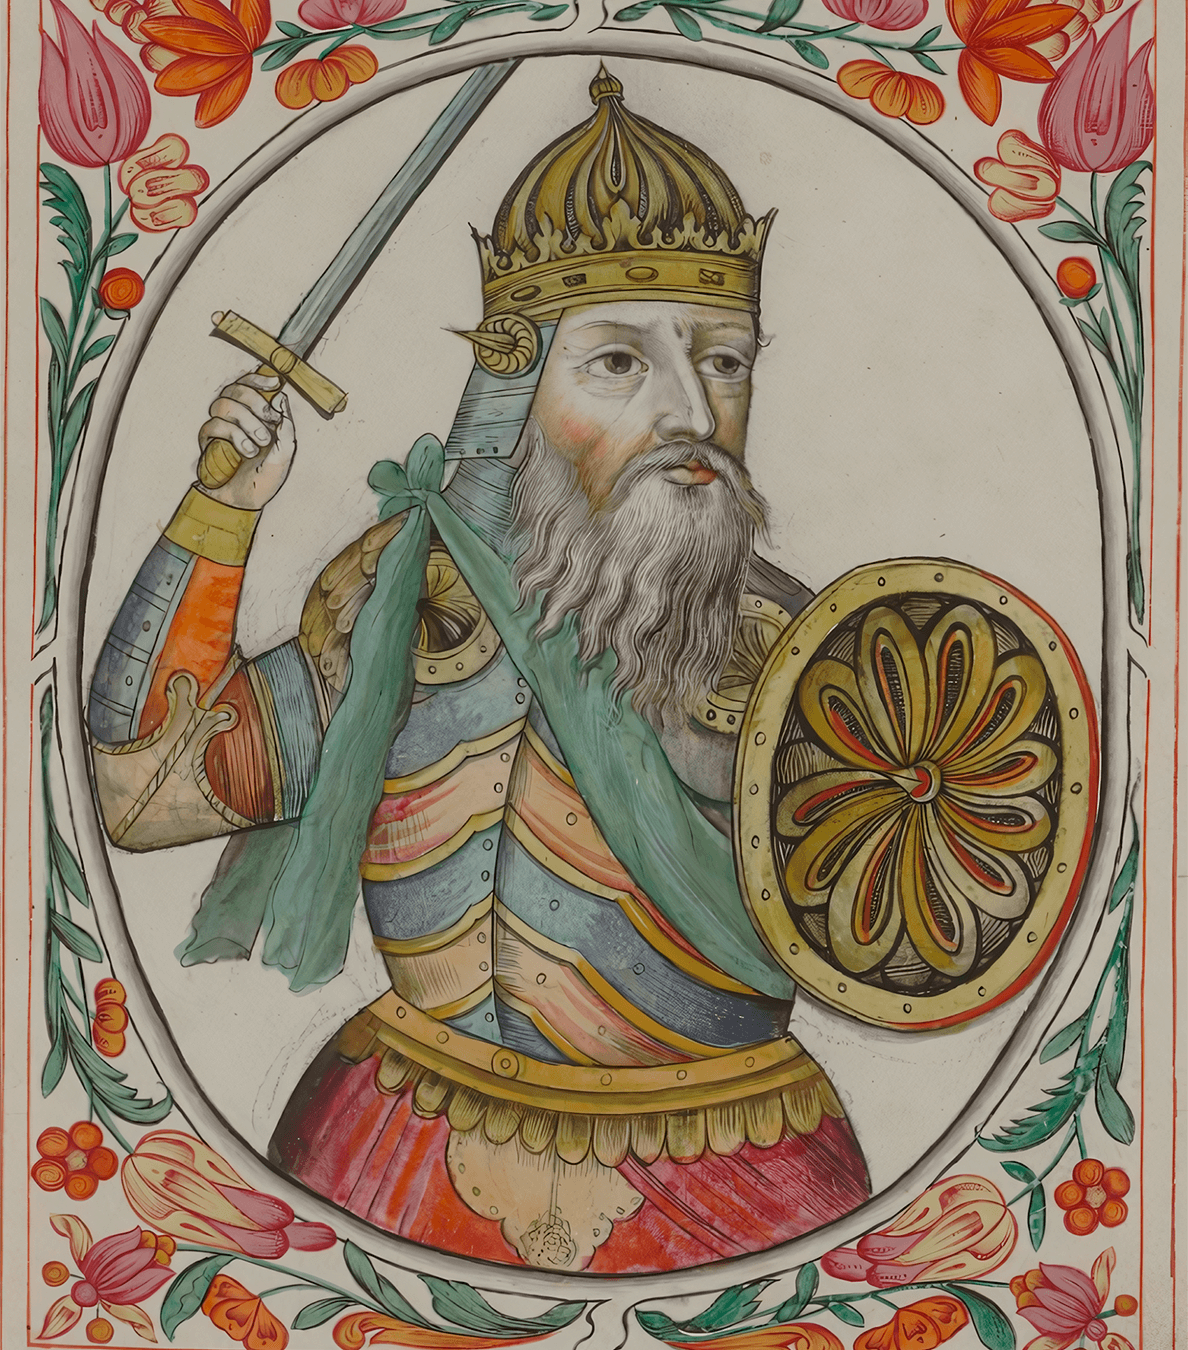 Условный портрет Святослава Игоревича из Царского титулярника, XVII век